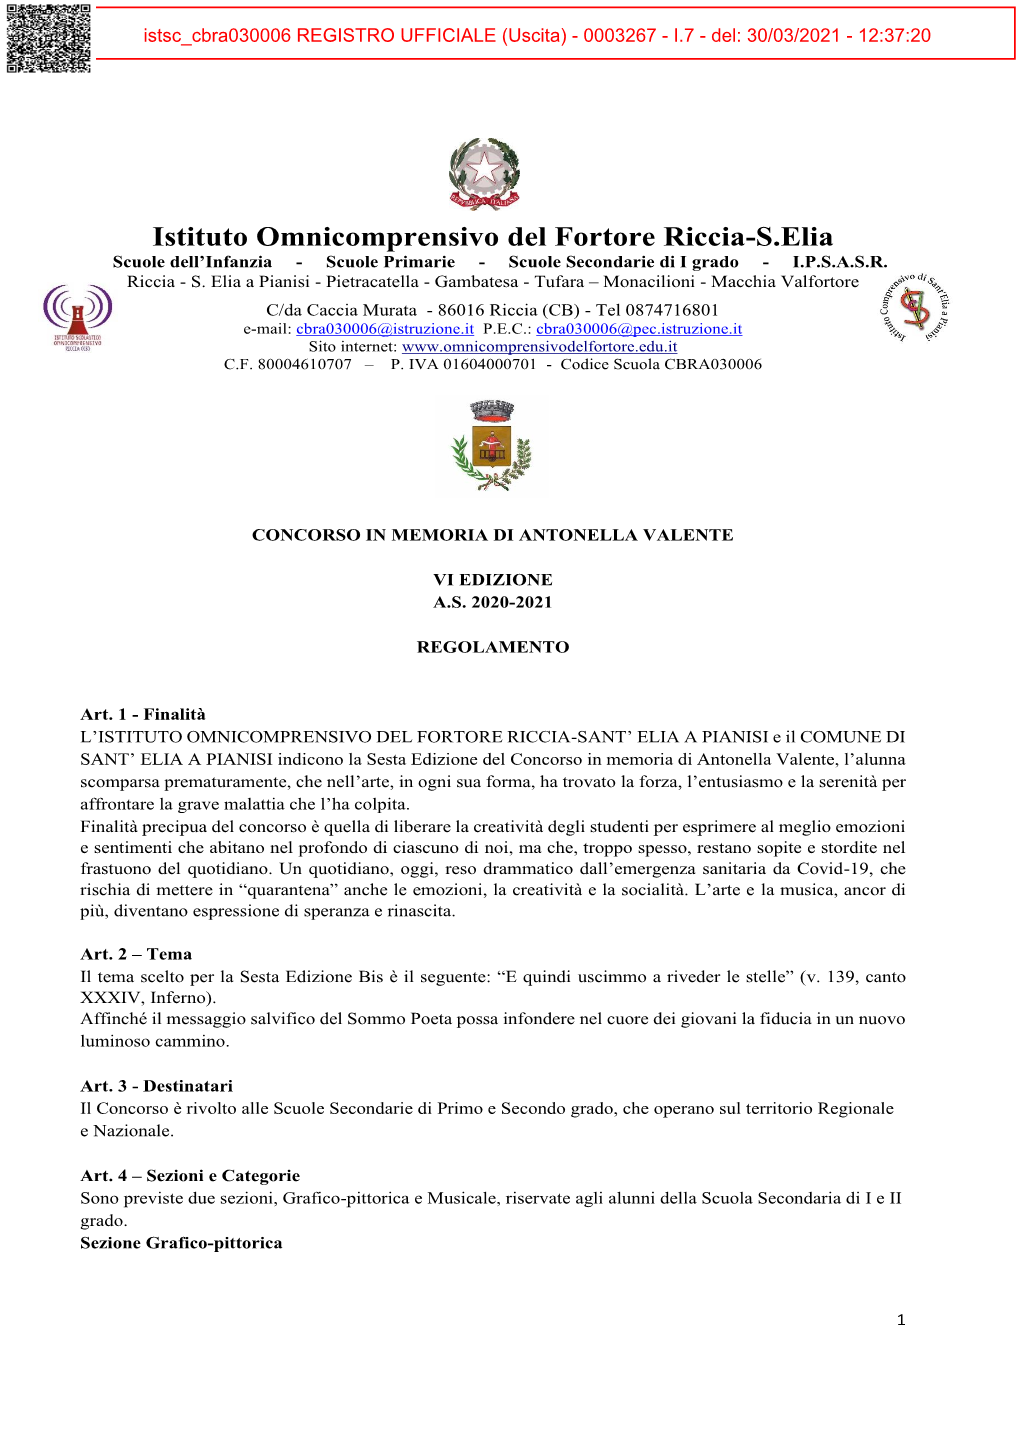 Istituto Omnicomprensivo Del Fortore Riccia-S.Elia Scuole Dell’Infanzia - Scuole Primarie - Scuole Secondarie Di I Grado - I.P.S.A.S.R